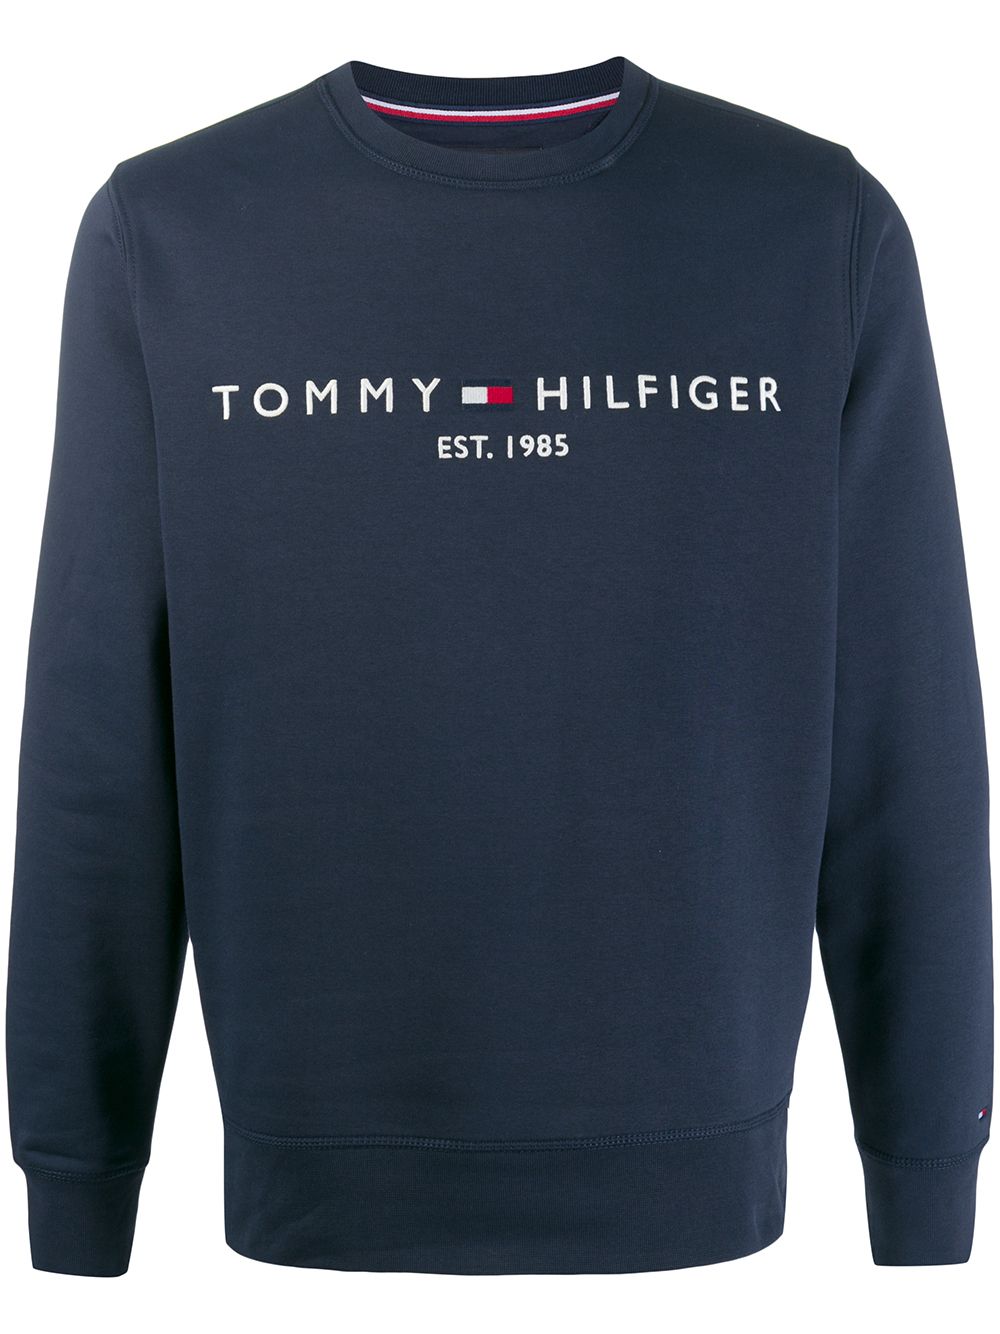 фото Tommy Hilfiger толстовка с вышитым логотипом